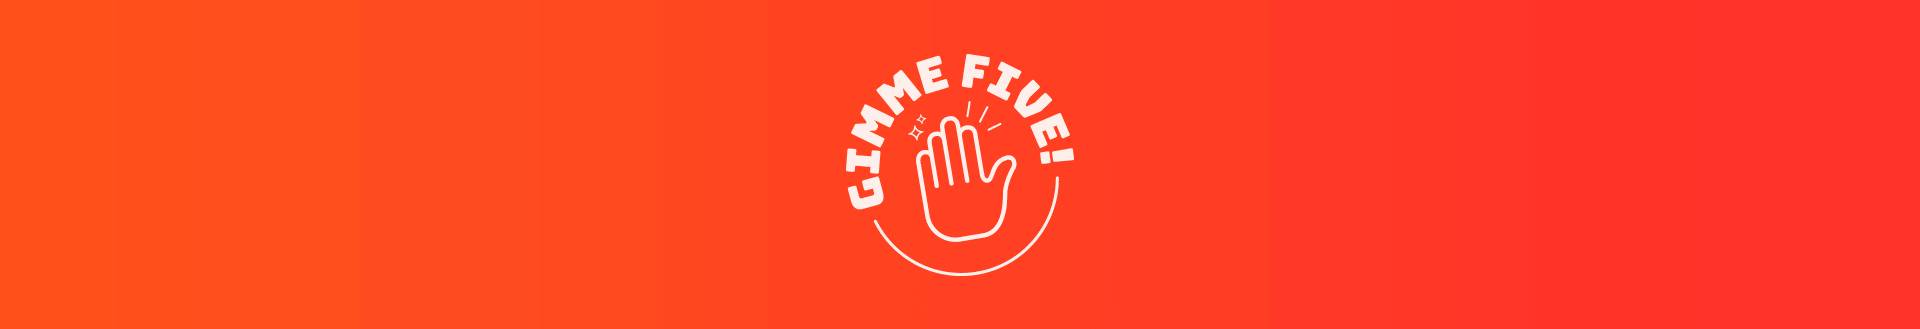 Imagen logo footer gimmefive